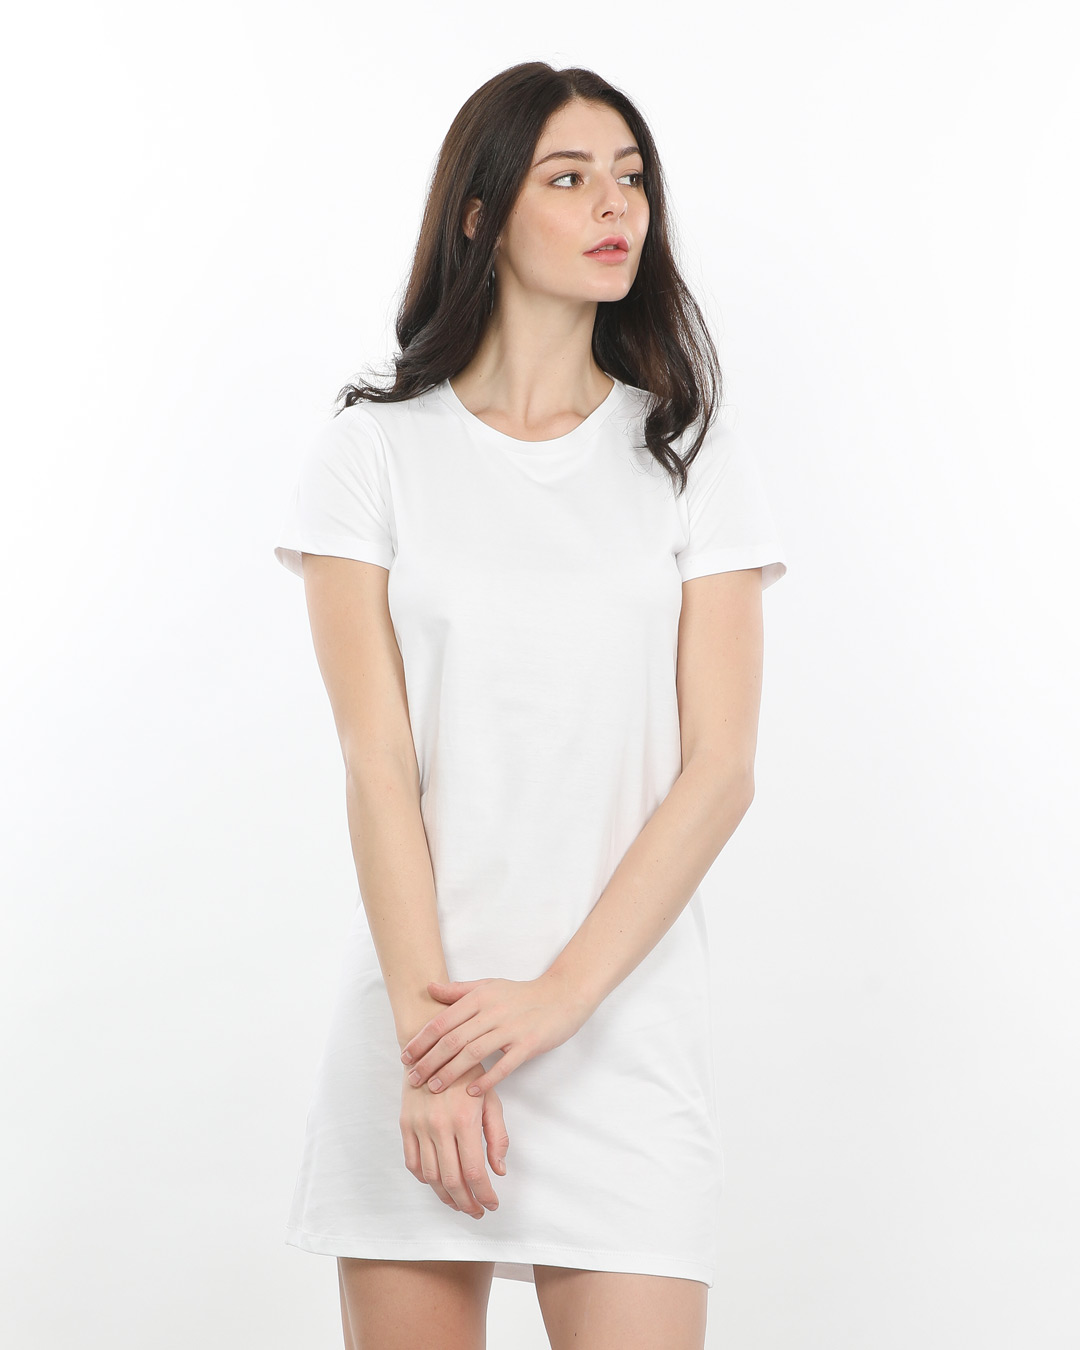 Buy White T-Shirt Dress Online at Bewakoof